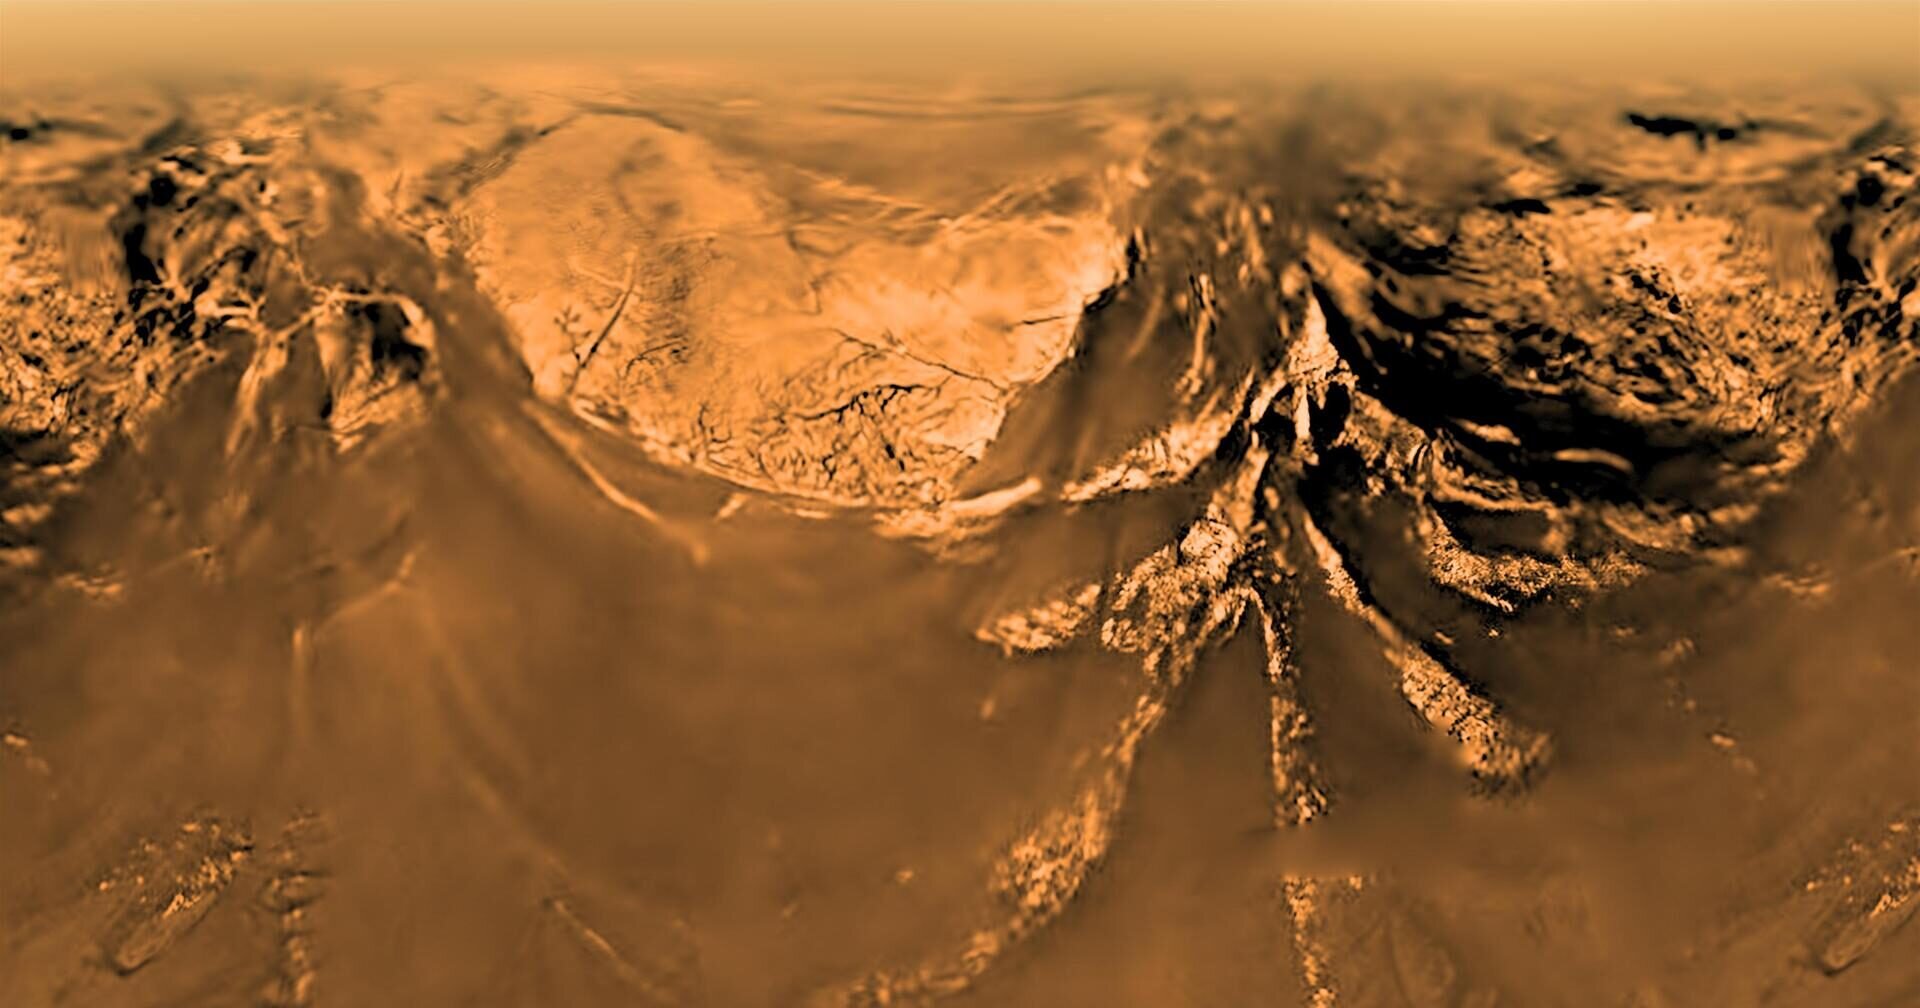 Исследование, проведенное западным астробиологом Кэтрин Нейш, показывает, что крупнейший спутник Сатурна, Титан, по всей видимости необитаем